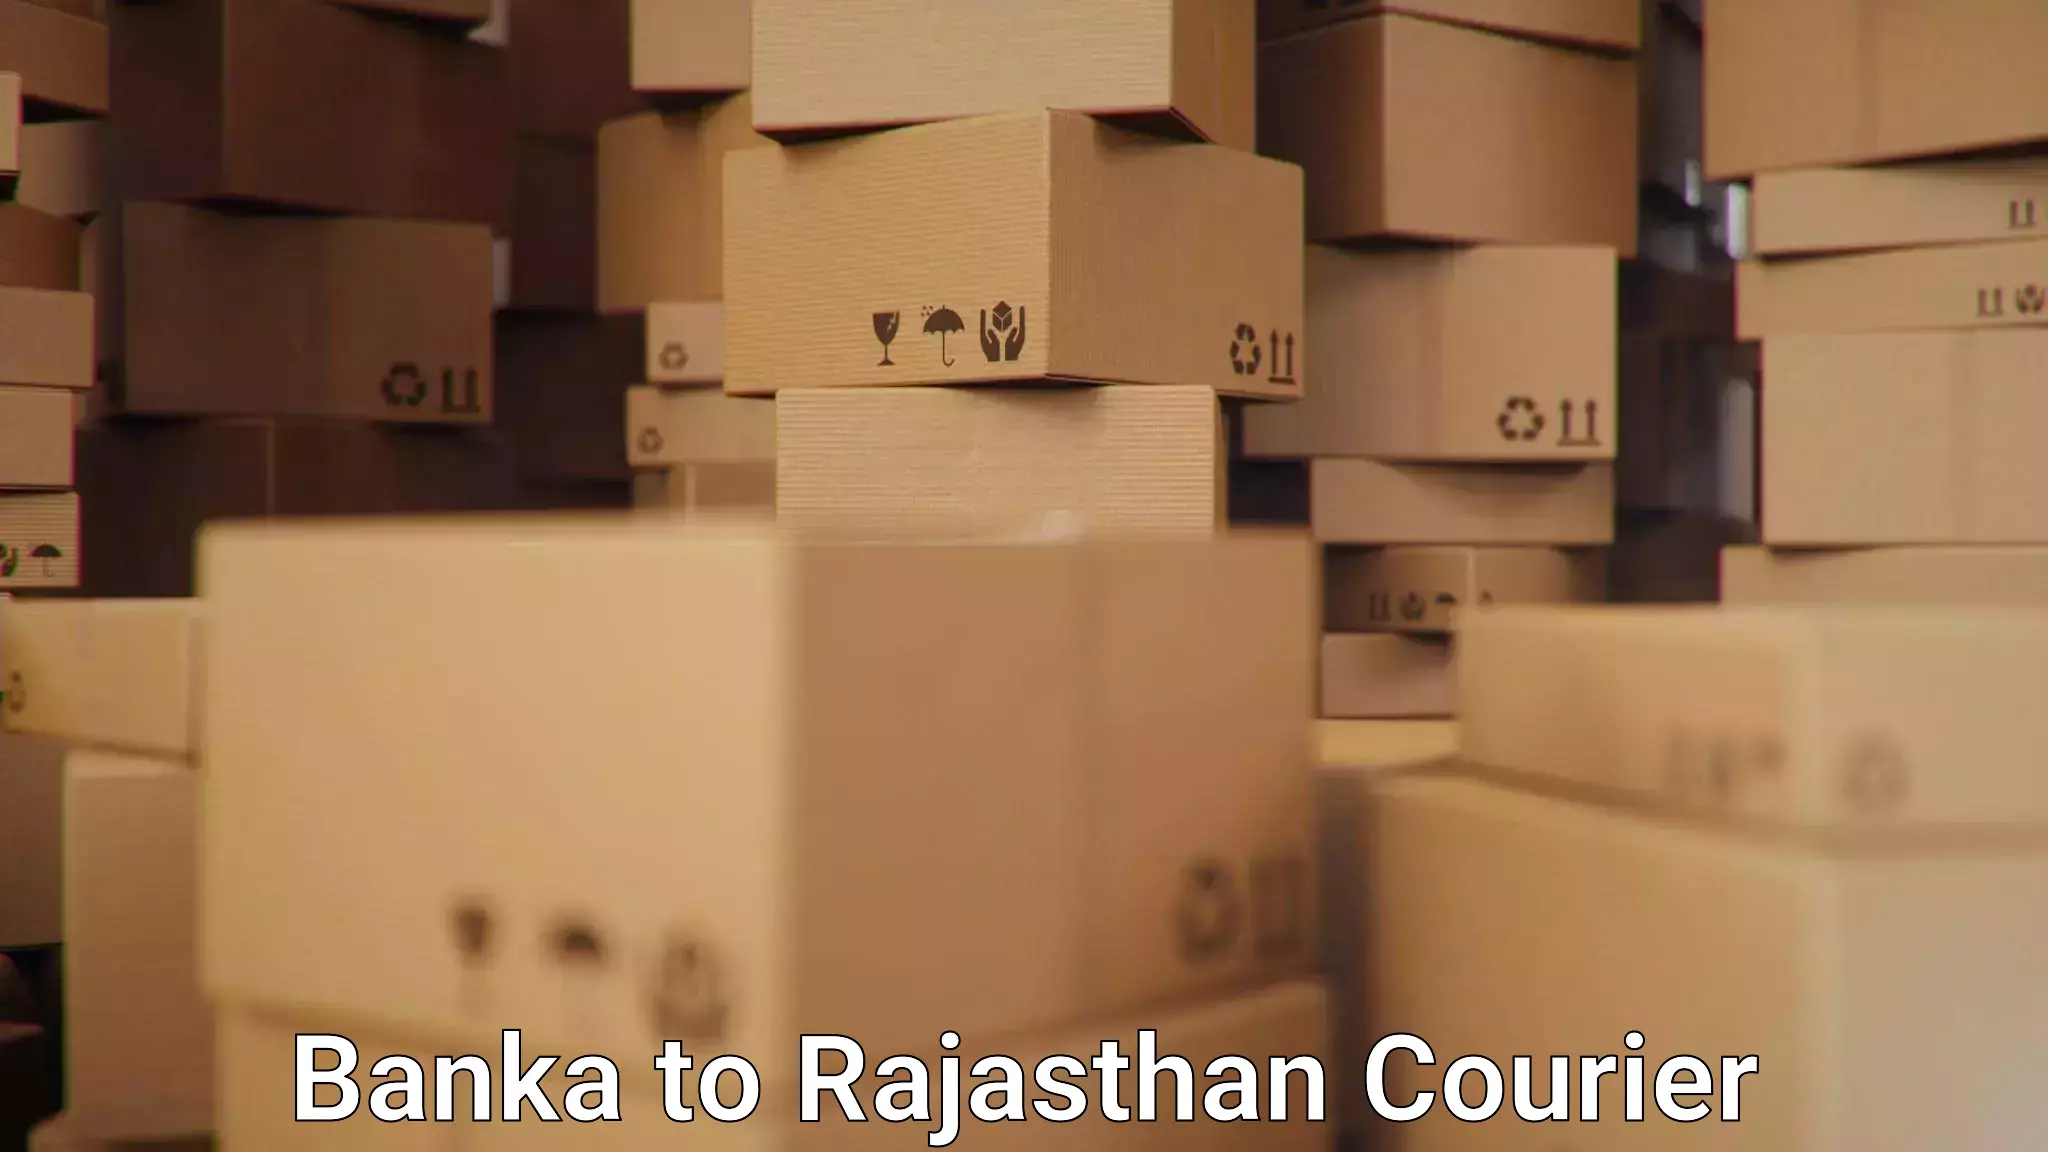 Global parcel delivery Banka to Kekri